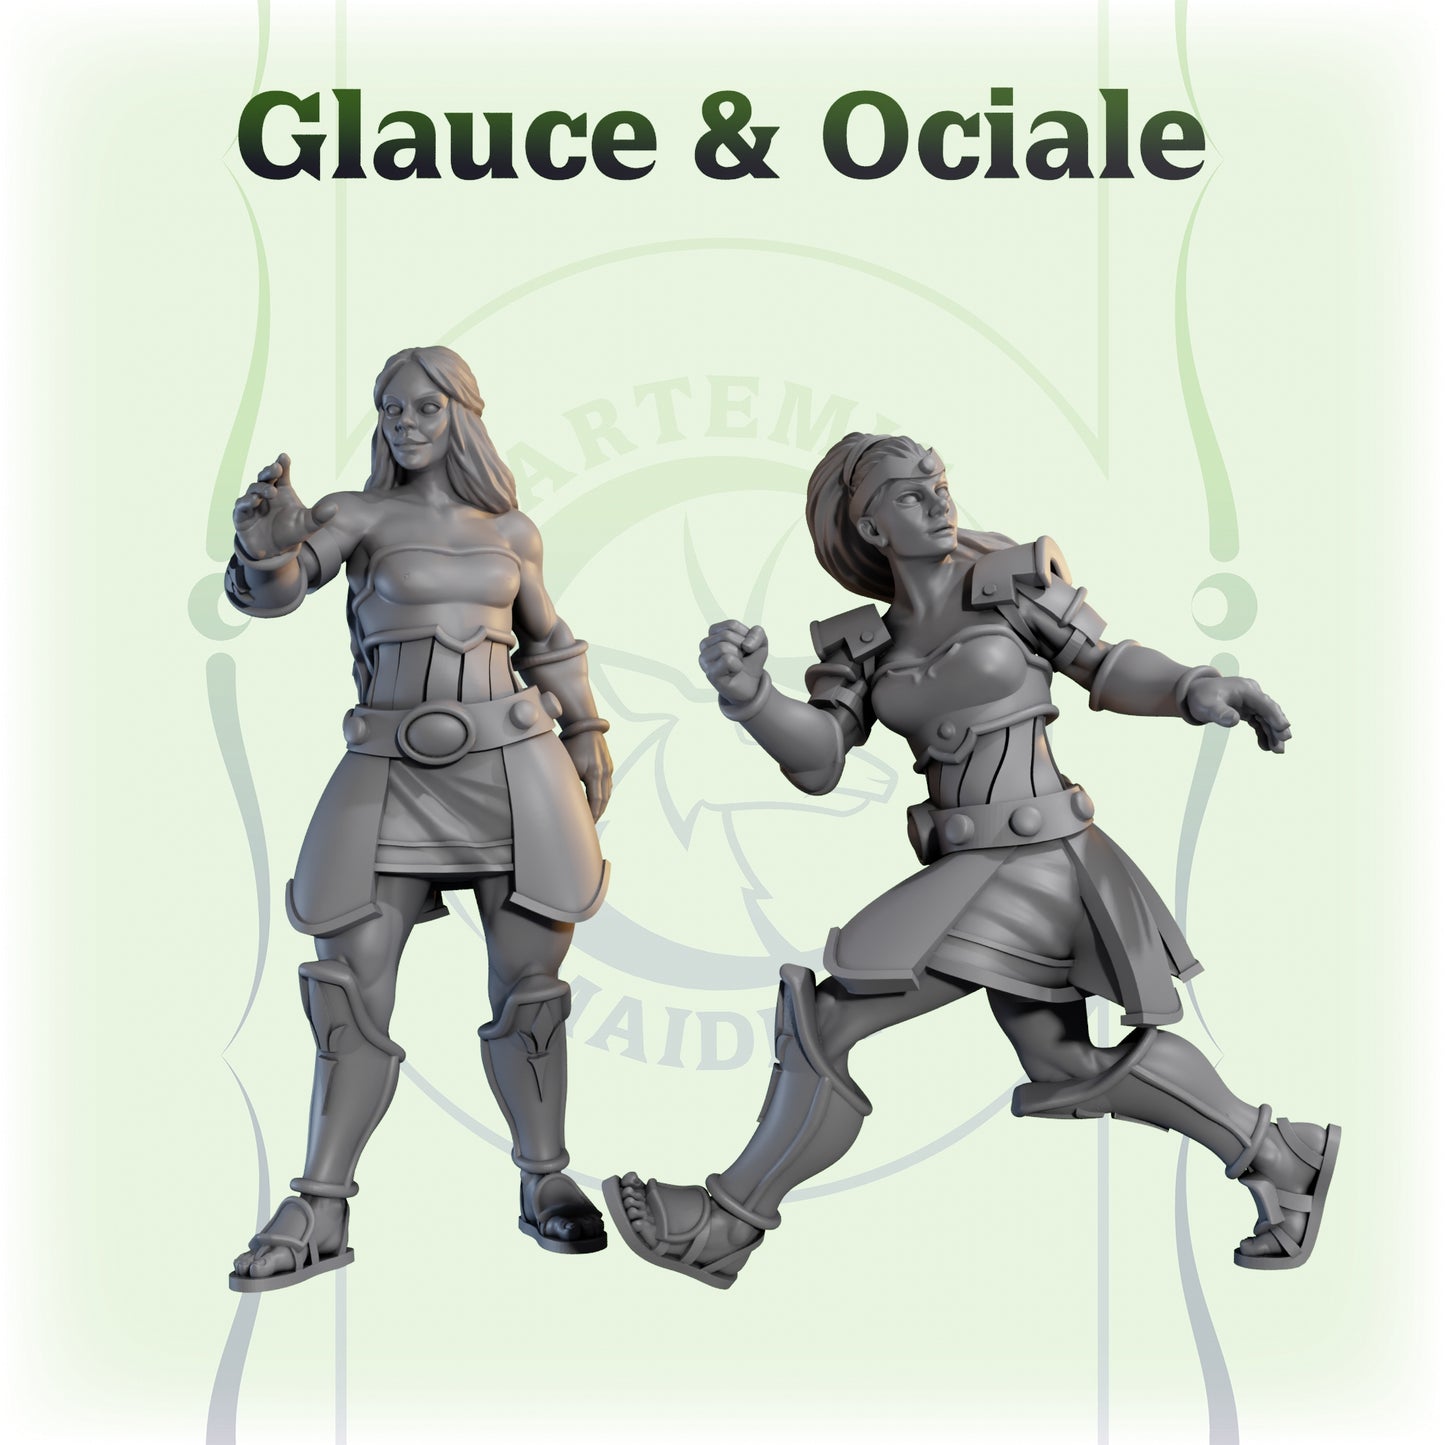 Glauce & Ociale